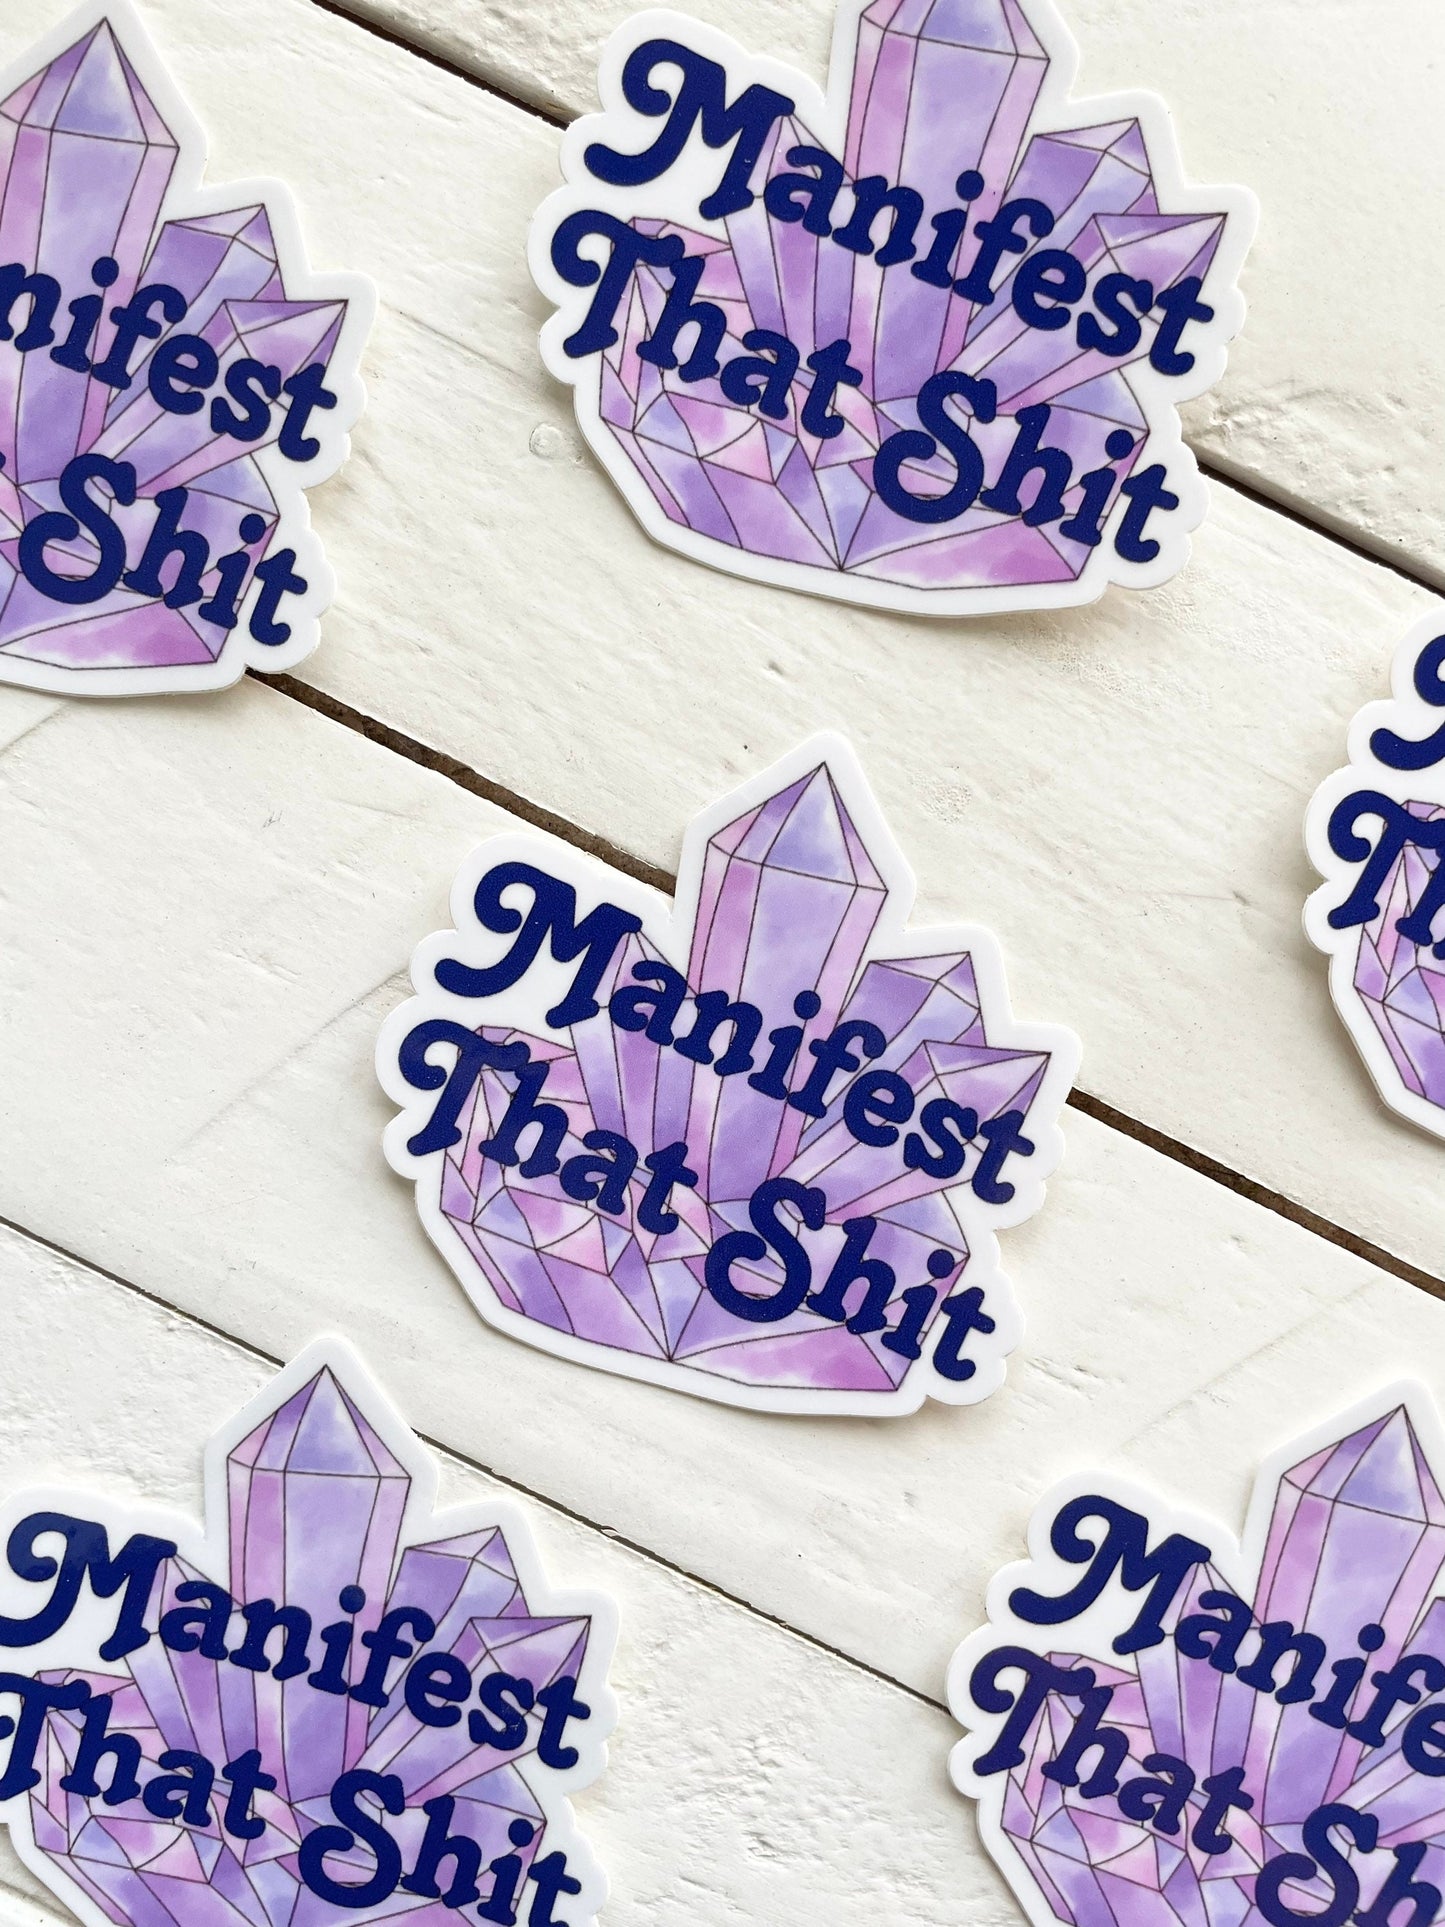 Manifest That Shit, 3" Sticker